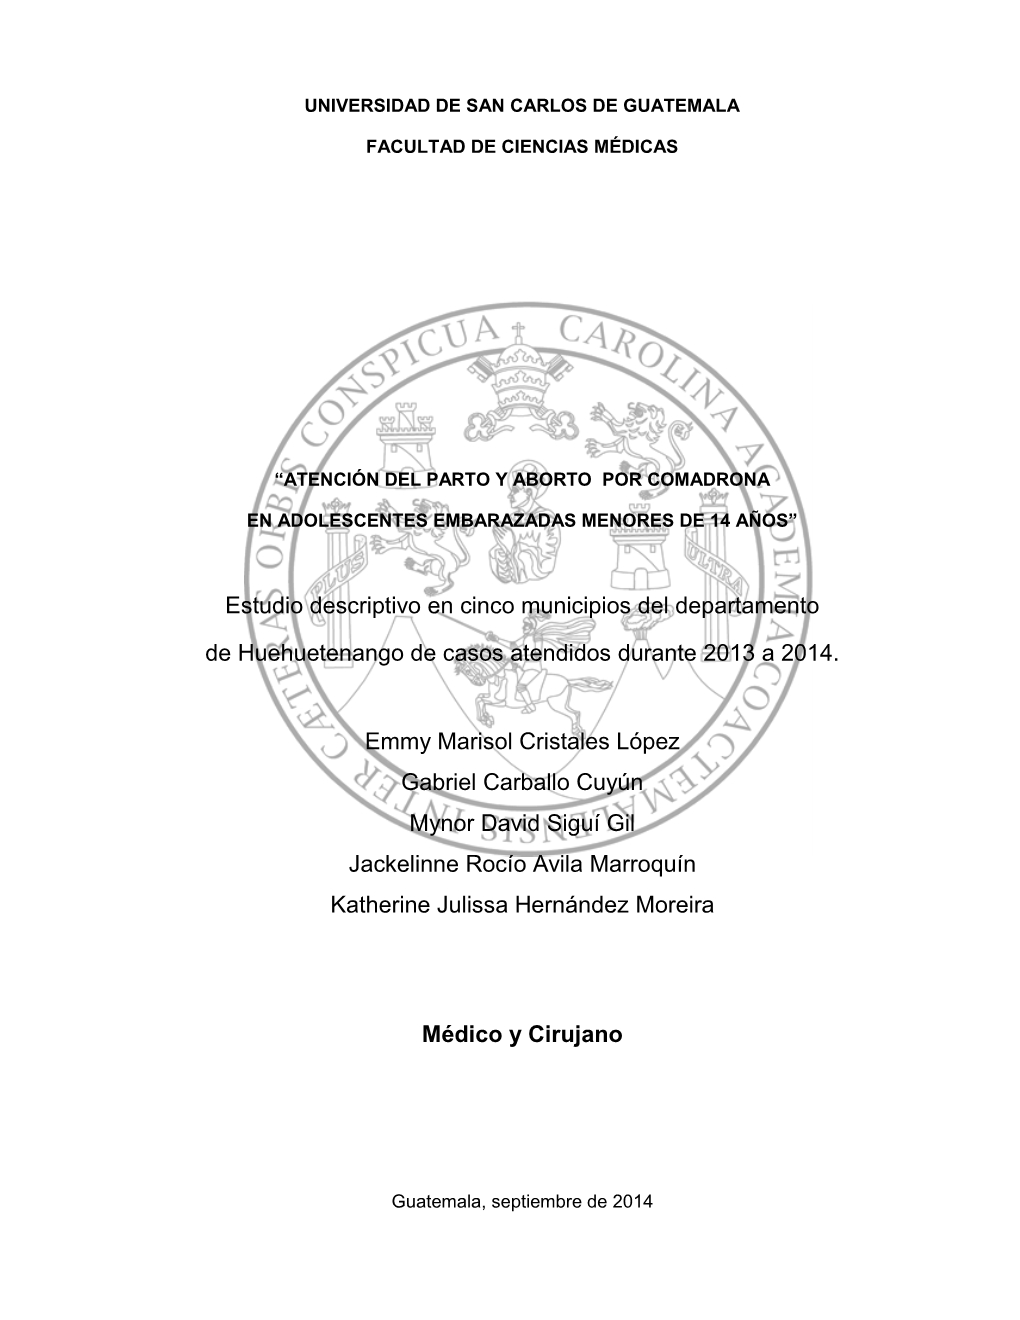 Estudio Descriptivo En Cinco Municipios Del Departamento De Huehuetenango De Casos Atendidos Durante 2013 a 2014. Emmy Marisol